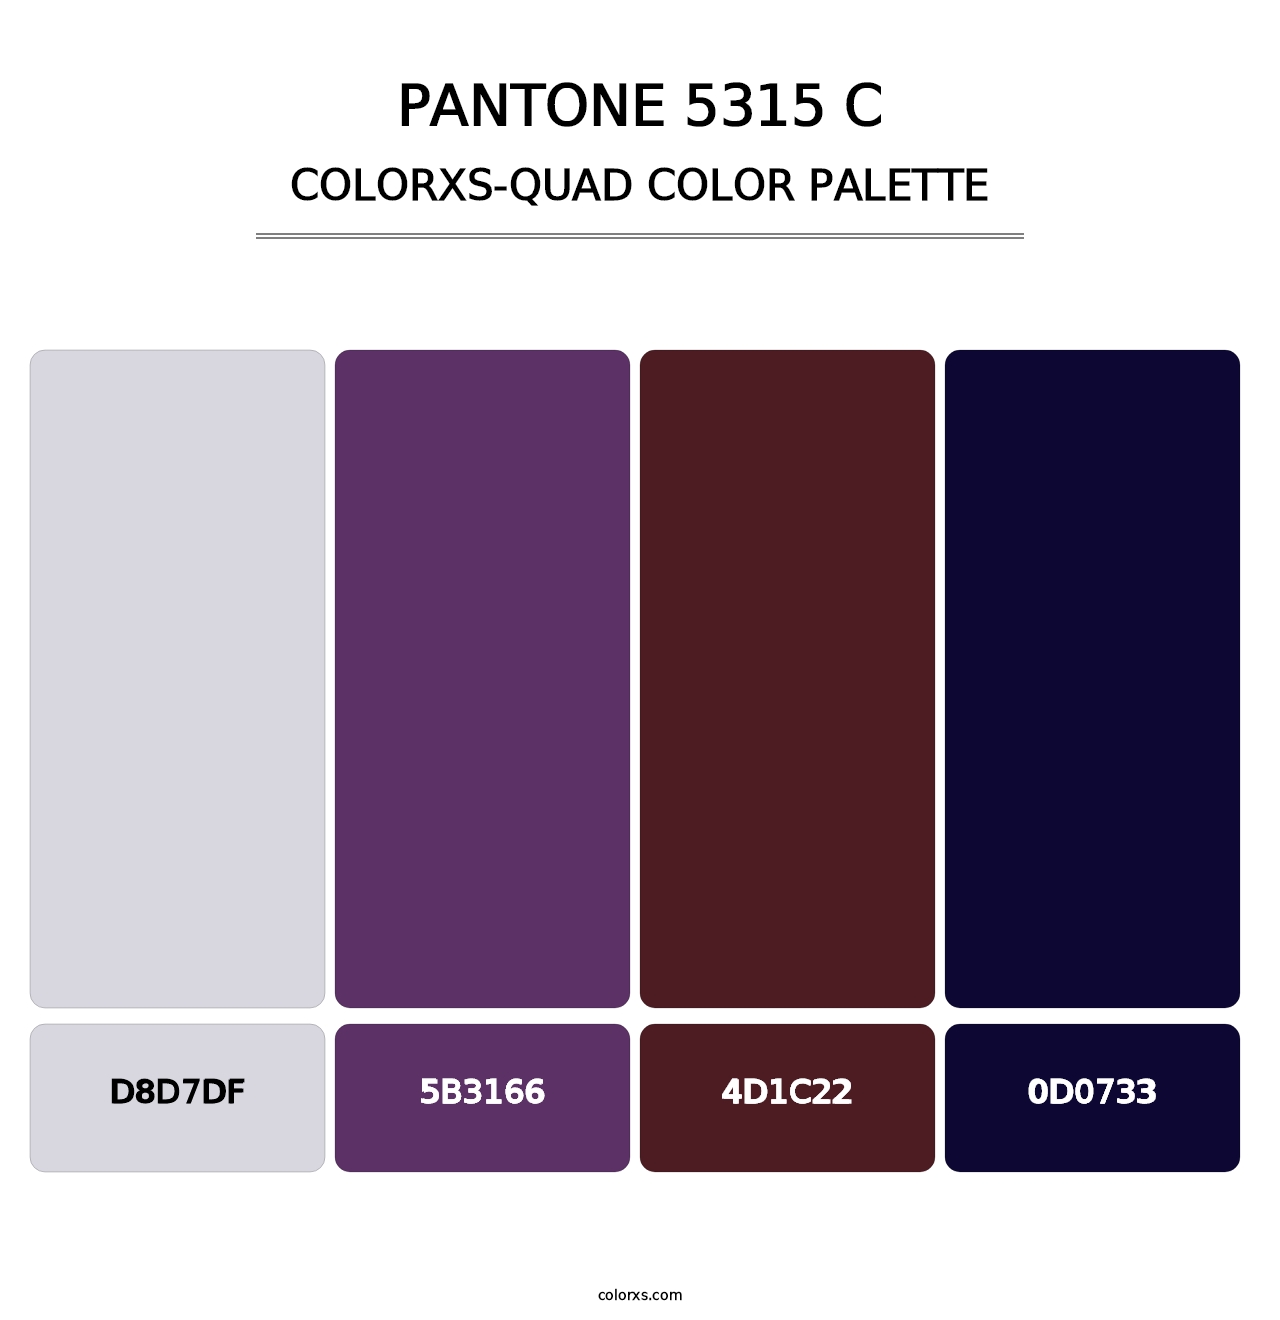 PANTONE 5315 C - Colorxs Quad Palette